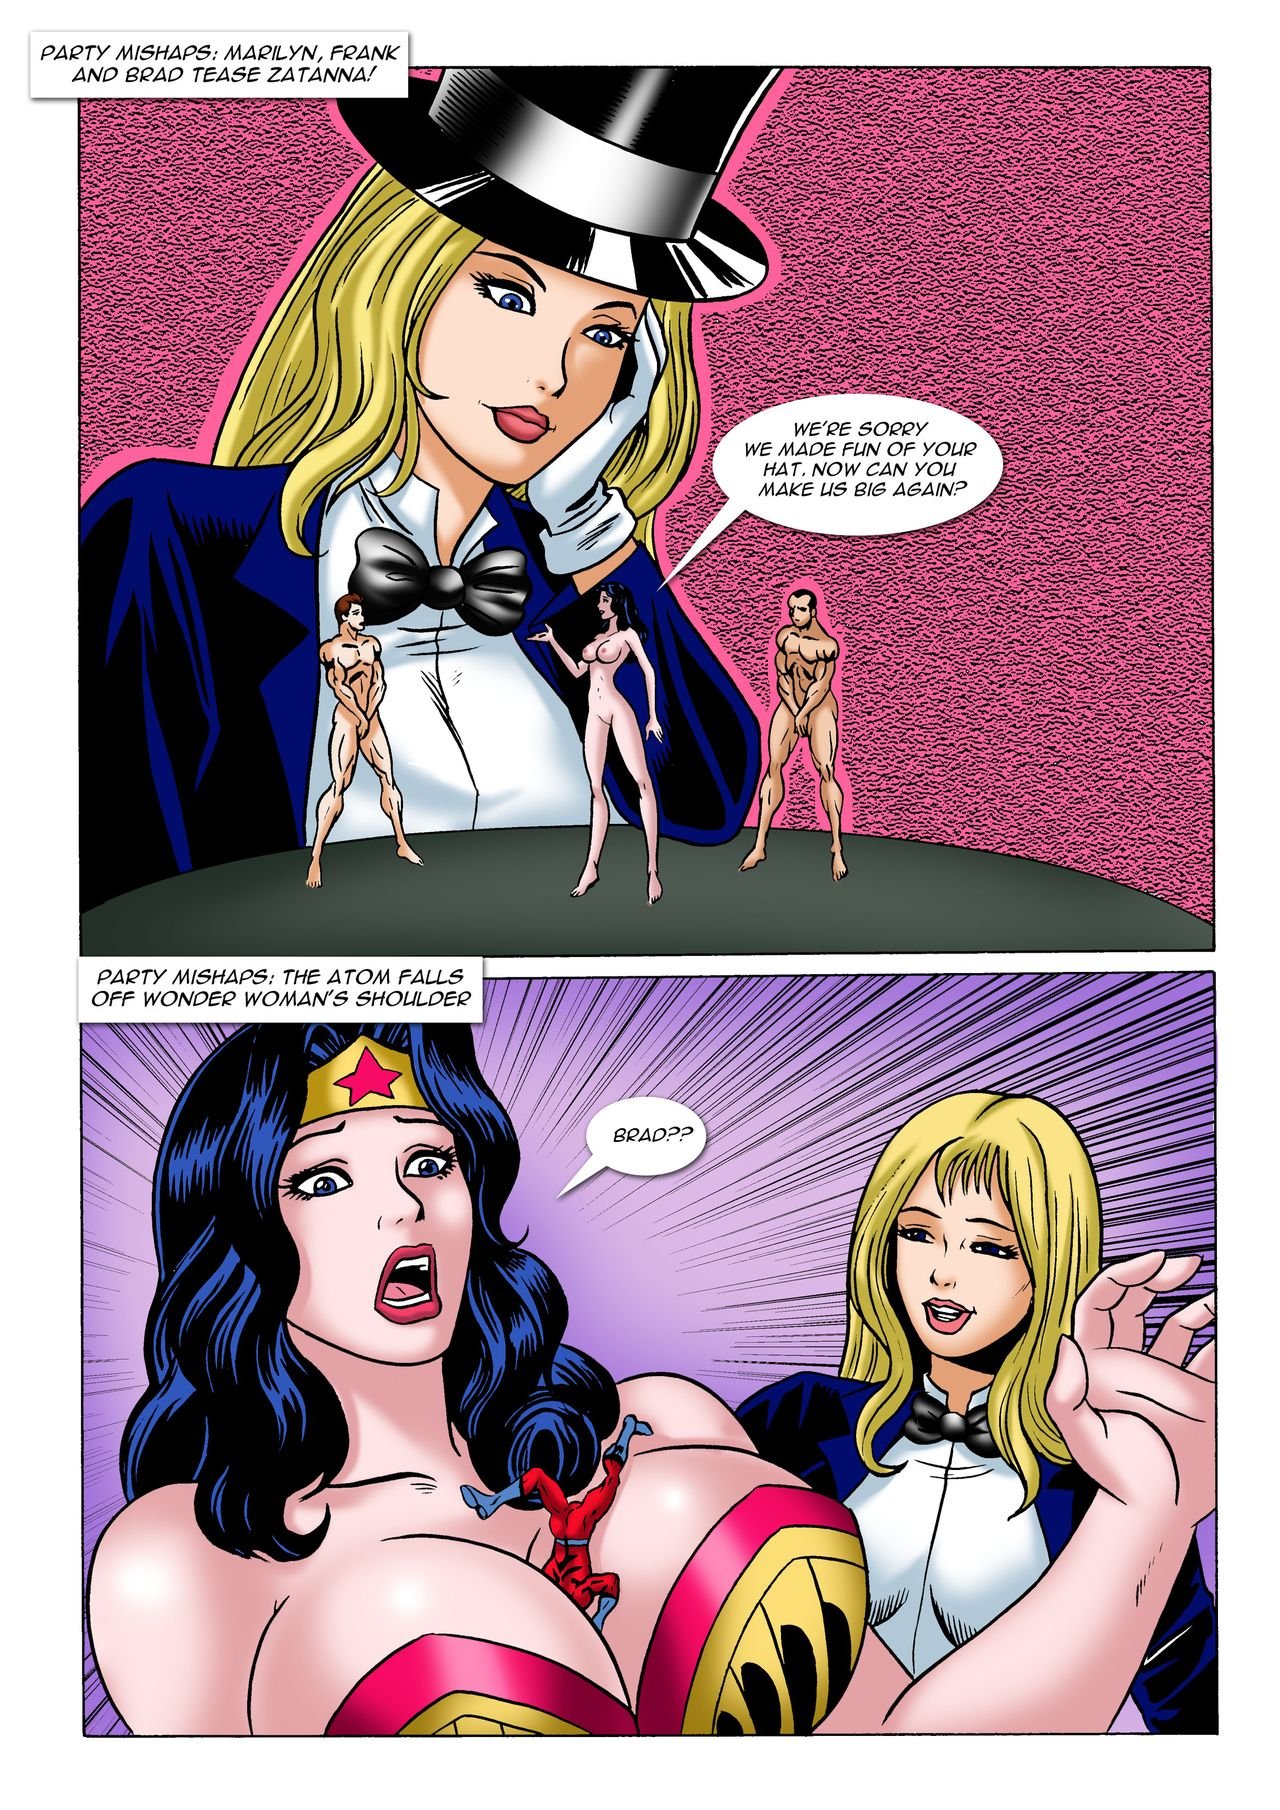 Super hero comics porn - neverenoughthebook.com